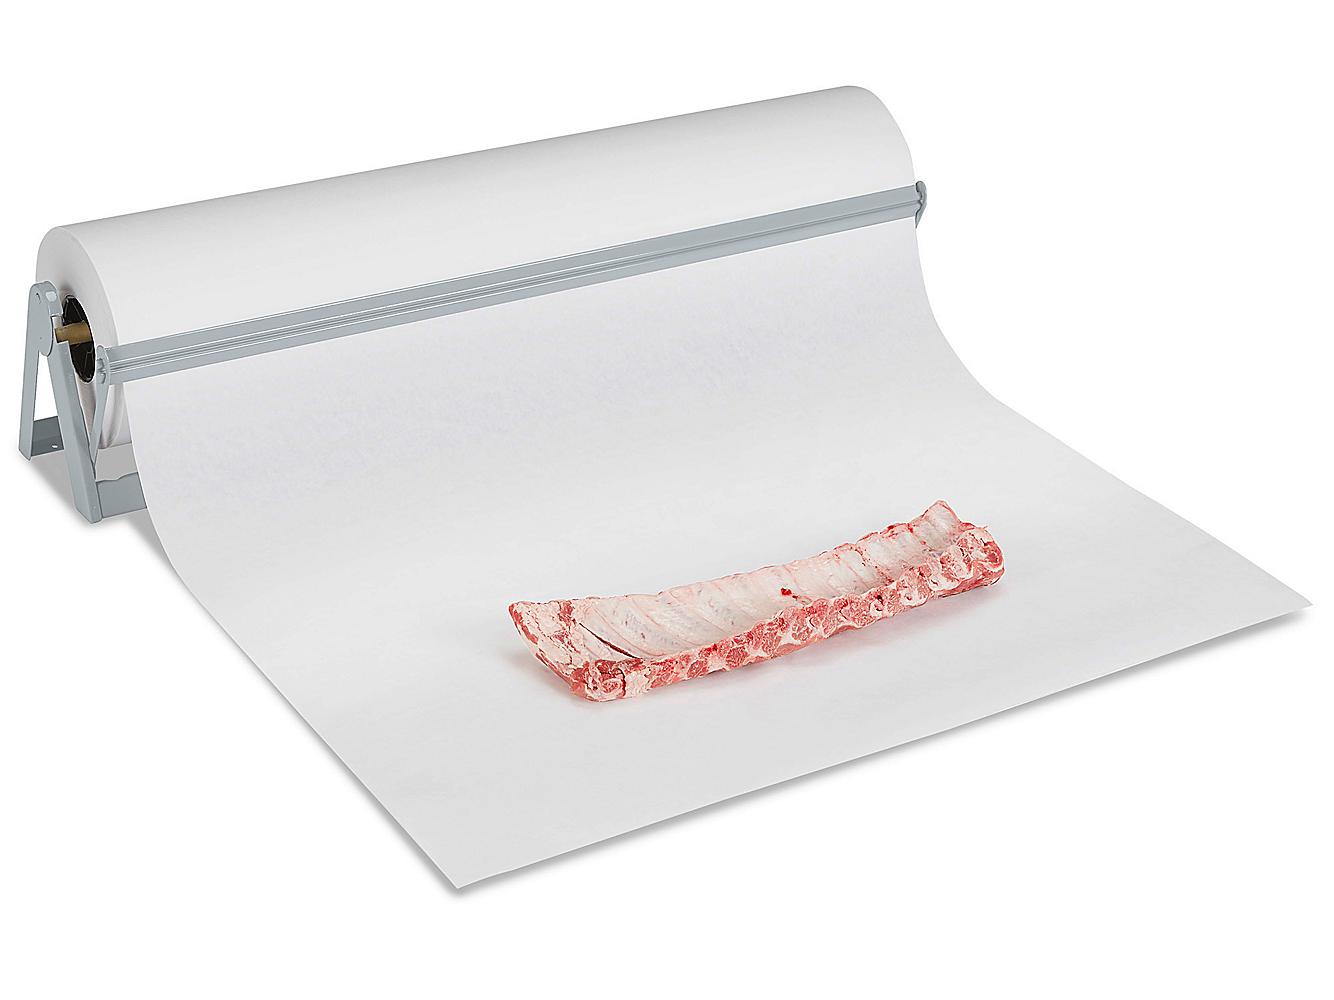 Butcher Paper Roll - White, 36 x 1,100' S-5233 - Uline